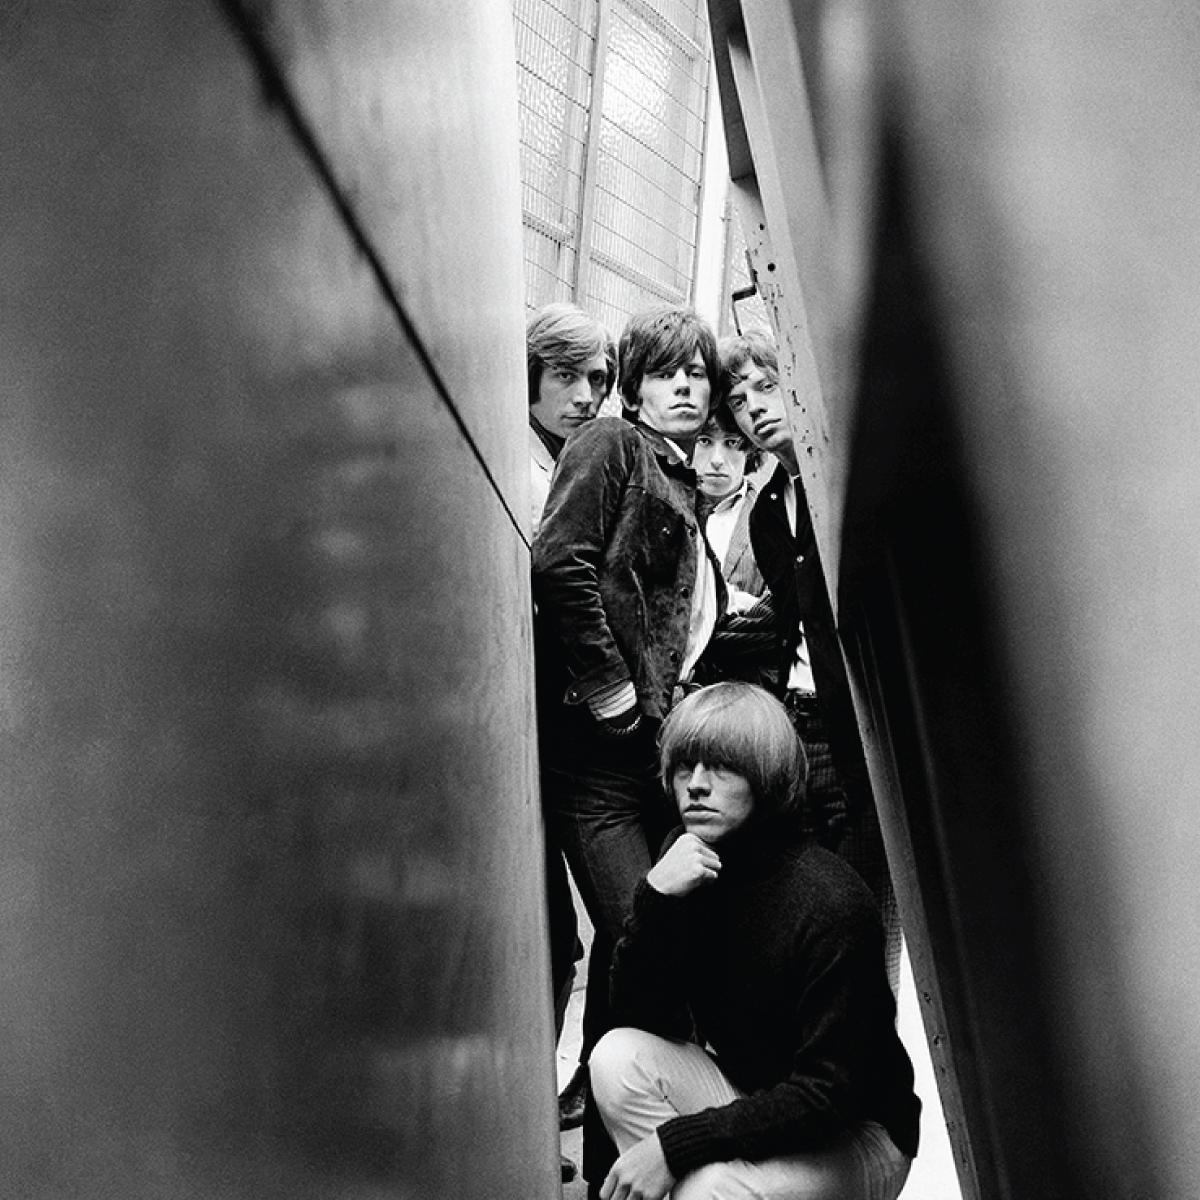 Les Rolling Stones, photographiés à Londres en 1965 par Gered Mankowitz. Cette image a été utilisée pour la couverture de Out Of Our Heads. Avec Mick Jagger, Keith Richards, Charlie Watts, Bill Wyman et Brian Jones.

Disponible dans les tailles